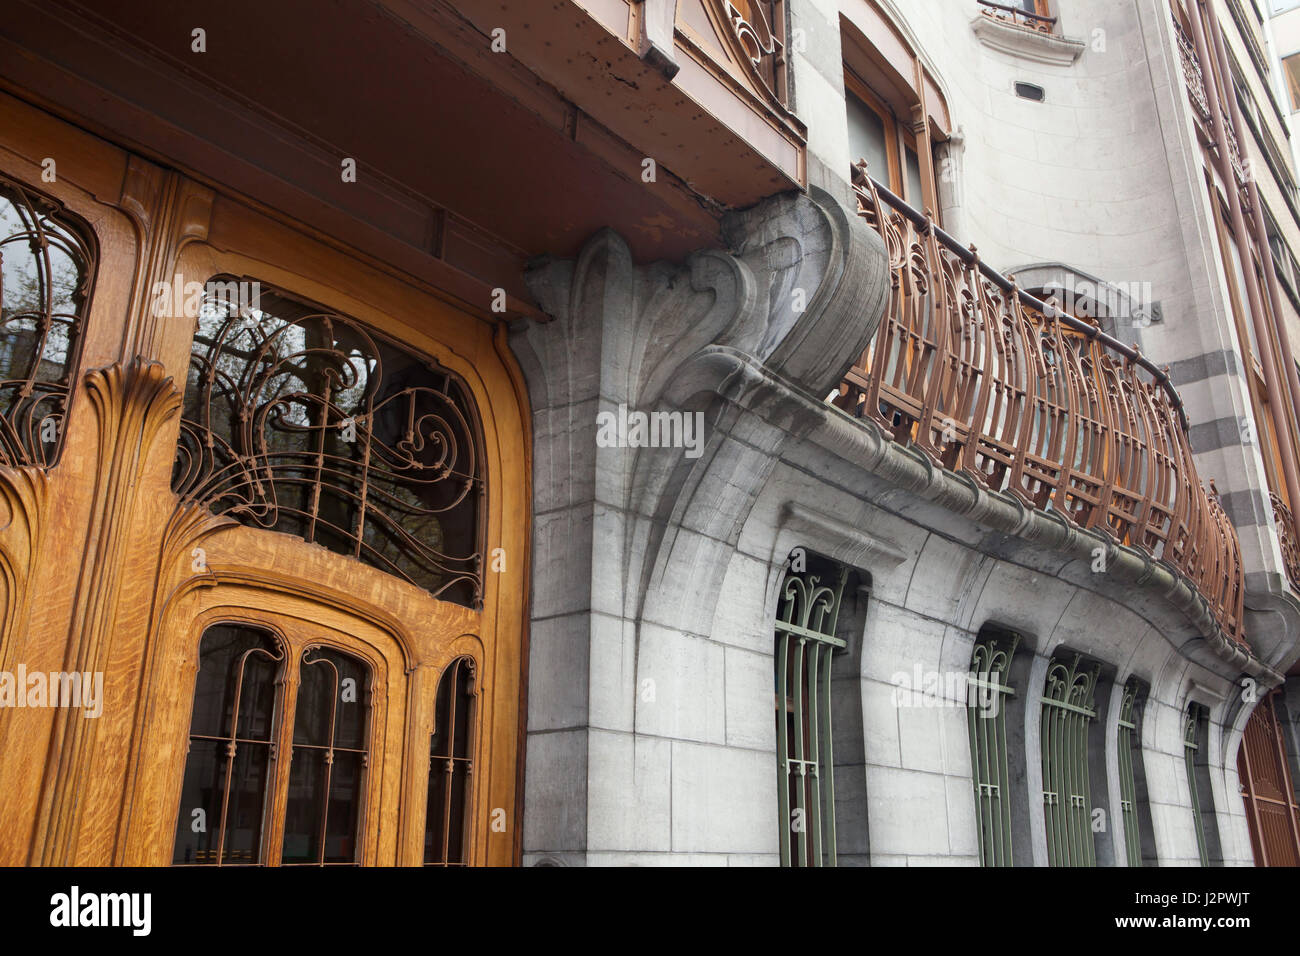 Hôtel Solvay à Bruxelles, Belgique. Maison de l'Art nouveau belge conçu par l'architecte Victor Horta pour le riche industriel Armand Solvay a été construit en 1894-1903. Le bâtiment a été inscrit sur la Liste du patrimoine mondial de l'UNESCO parmi les quatre autres bâtiments Art Nouveau à Bruxelles. Banque D'Images